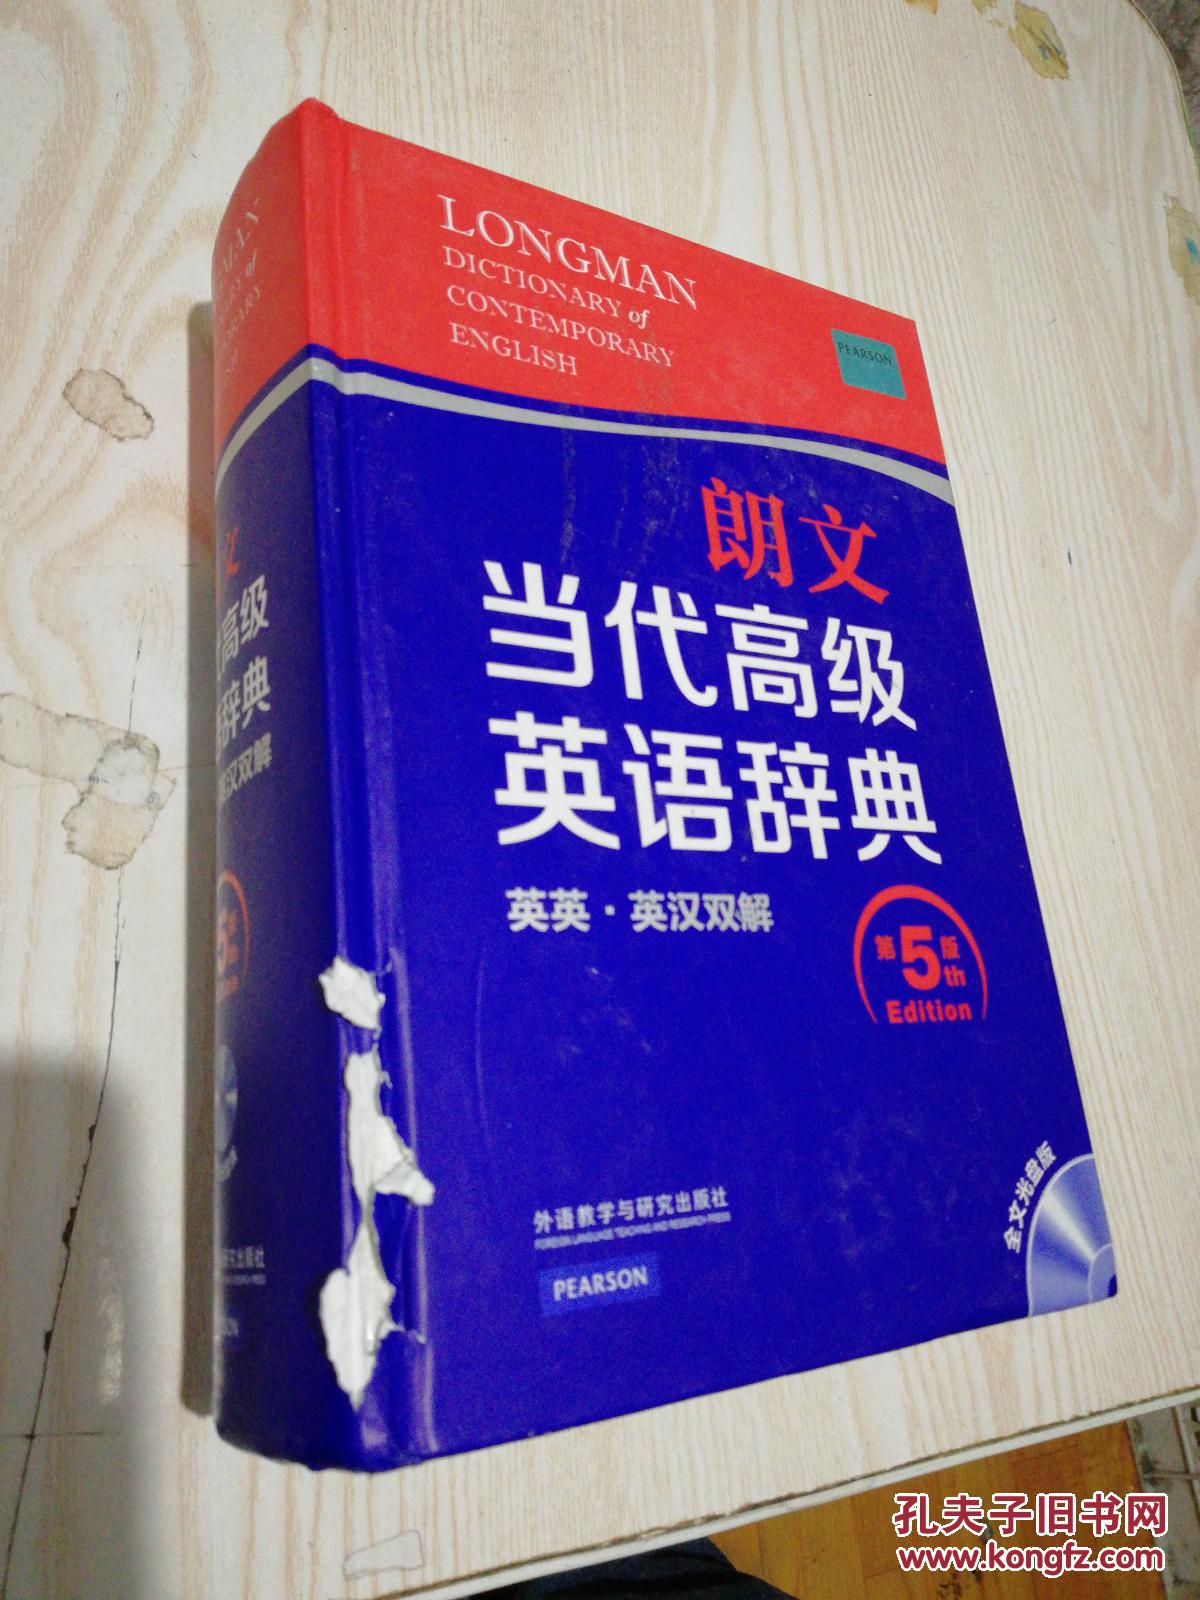 朗文当代高级英语辞典(第五版)英英·英汉双解